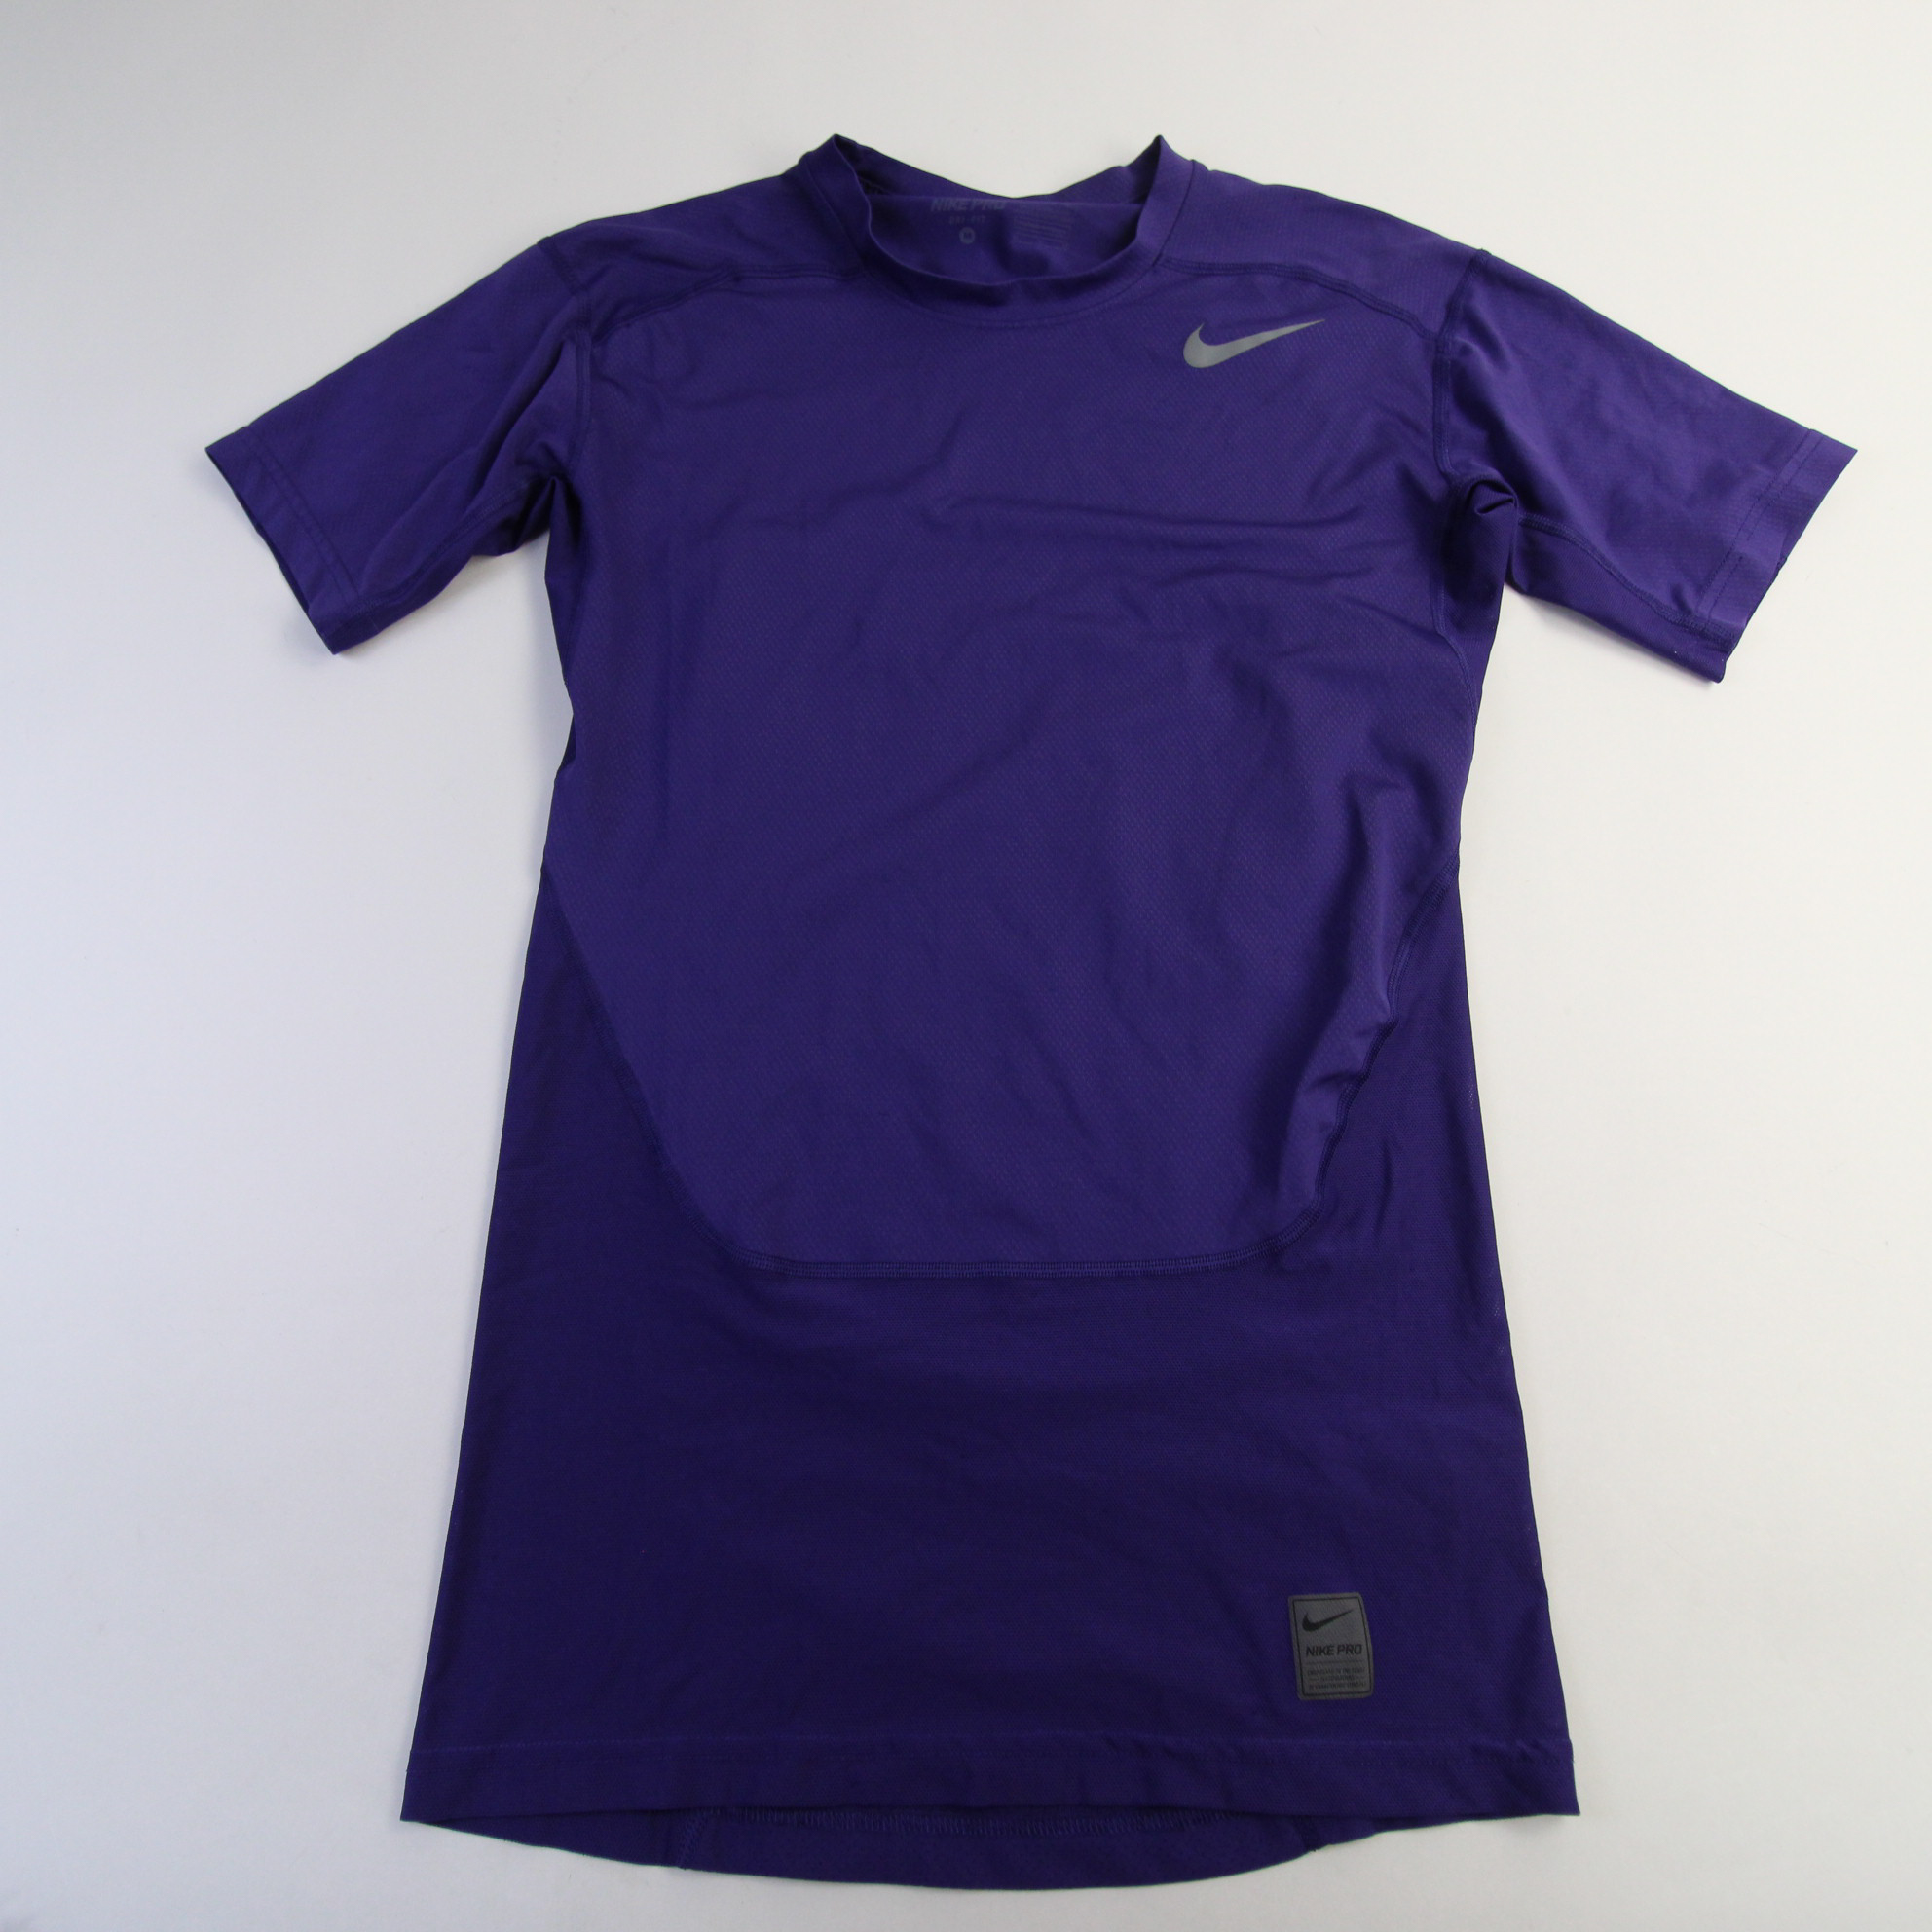 Nike Pro Dri-Fit Compression Top Men's Purple Used